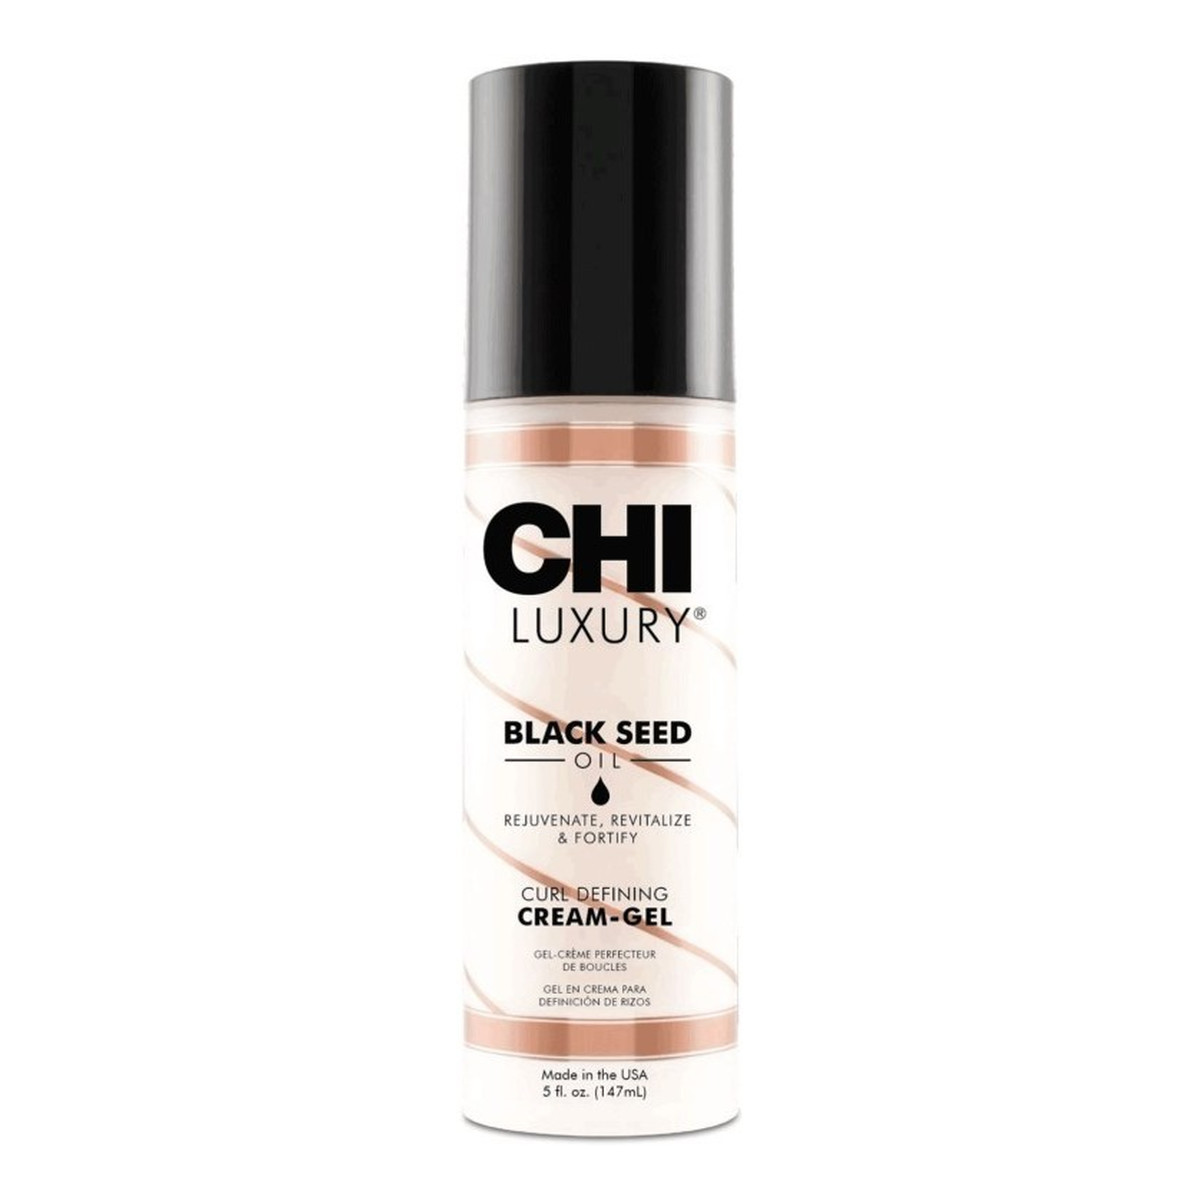 CHI Luxury Black Seed Oil krem do stylizacji włosów kręconych i falowanych 147ml